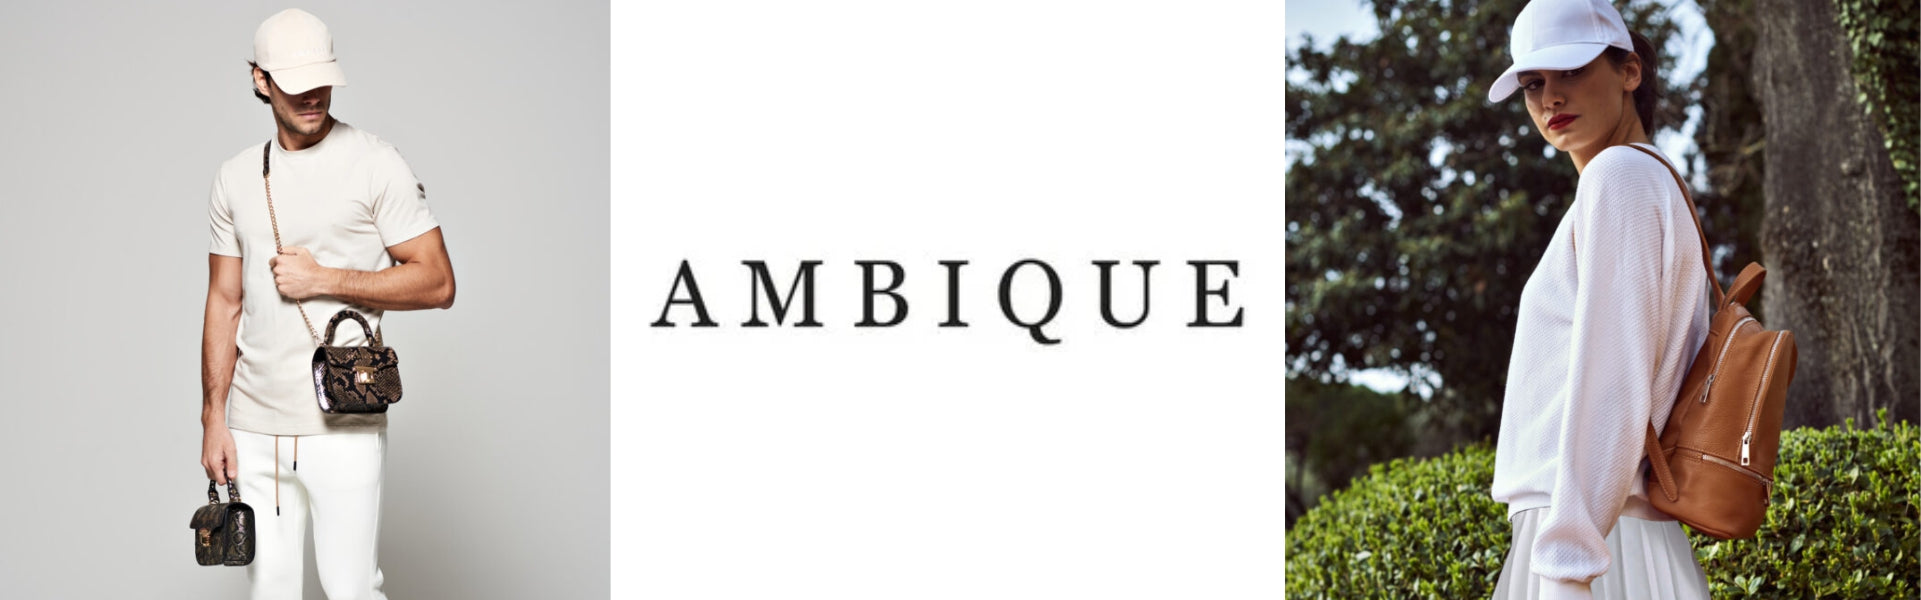 AMBIQUE, eine Welt der Perfektion, Leidenschaft und Qualität.